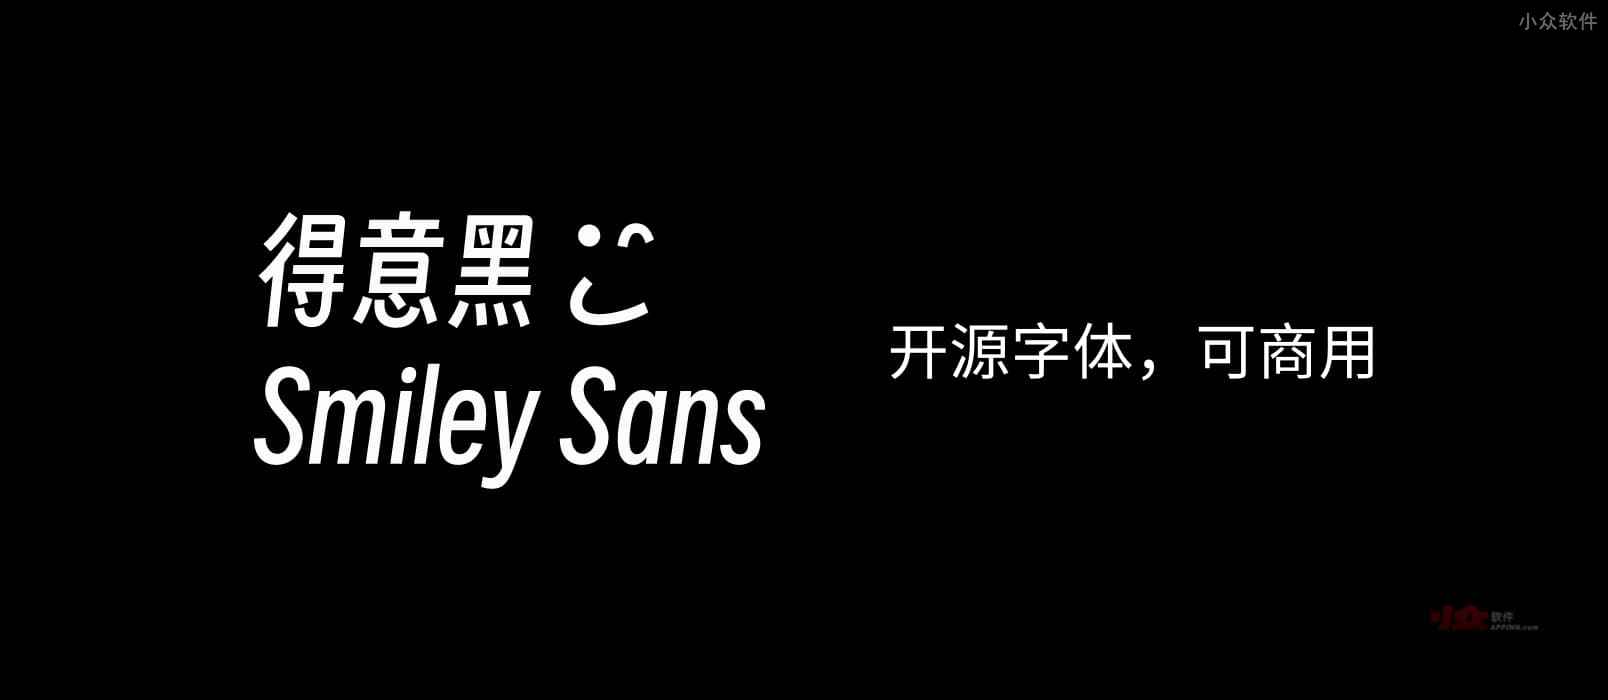 得意黑 Smiley Sans - 开源中文字体，可商用：已应用在 CCTV 世界杯转播之中 8